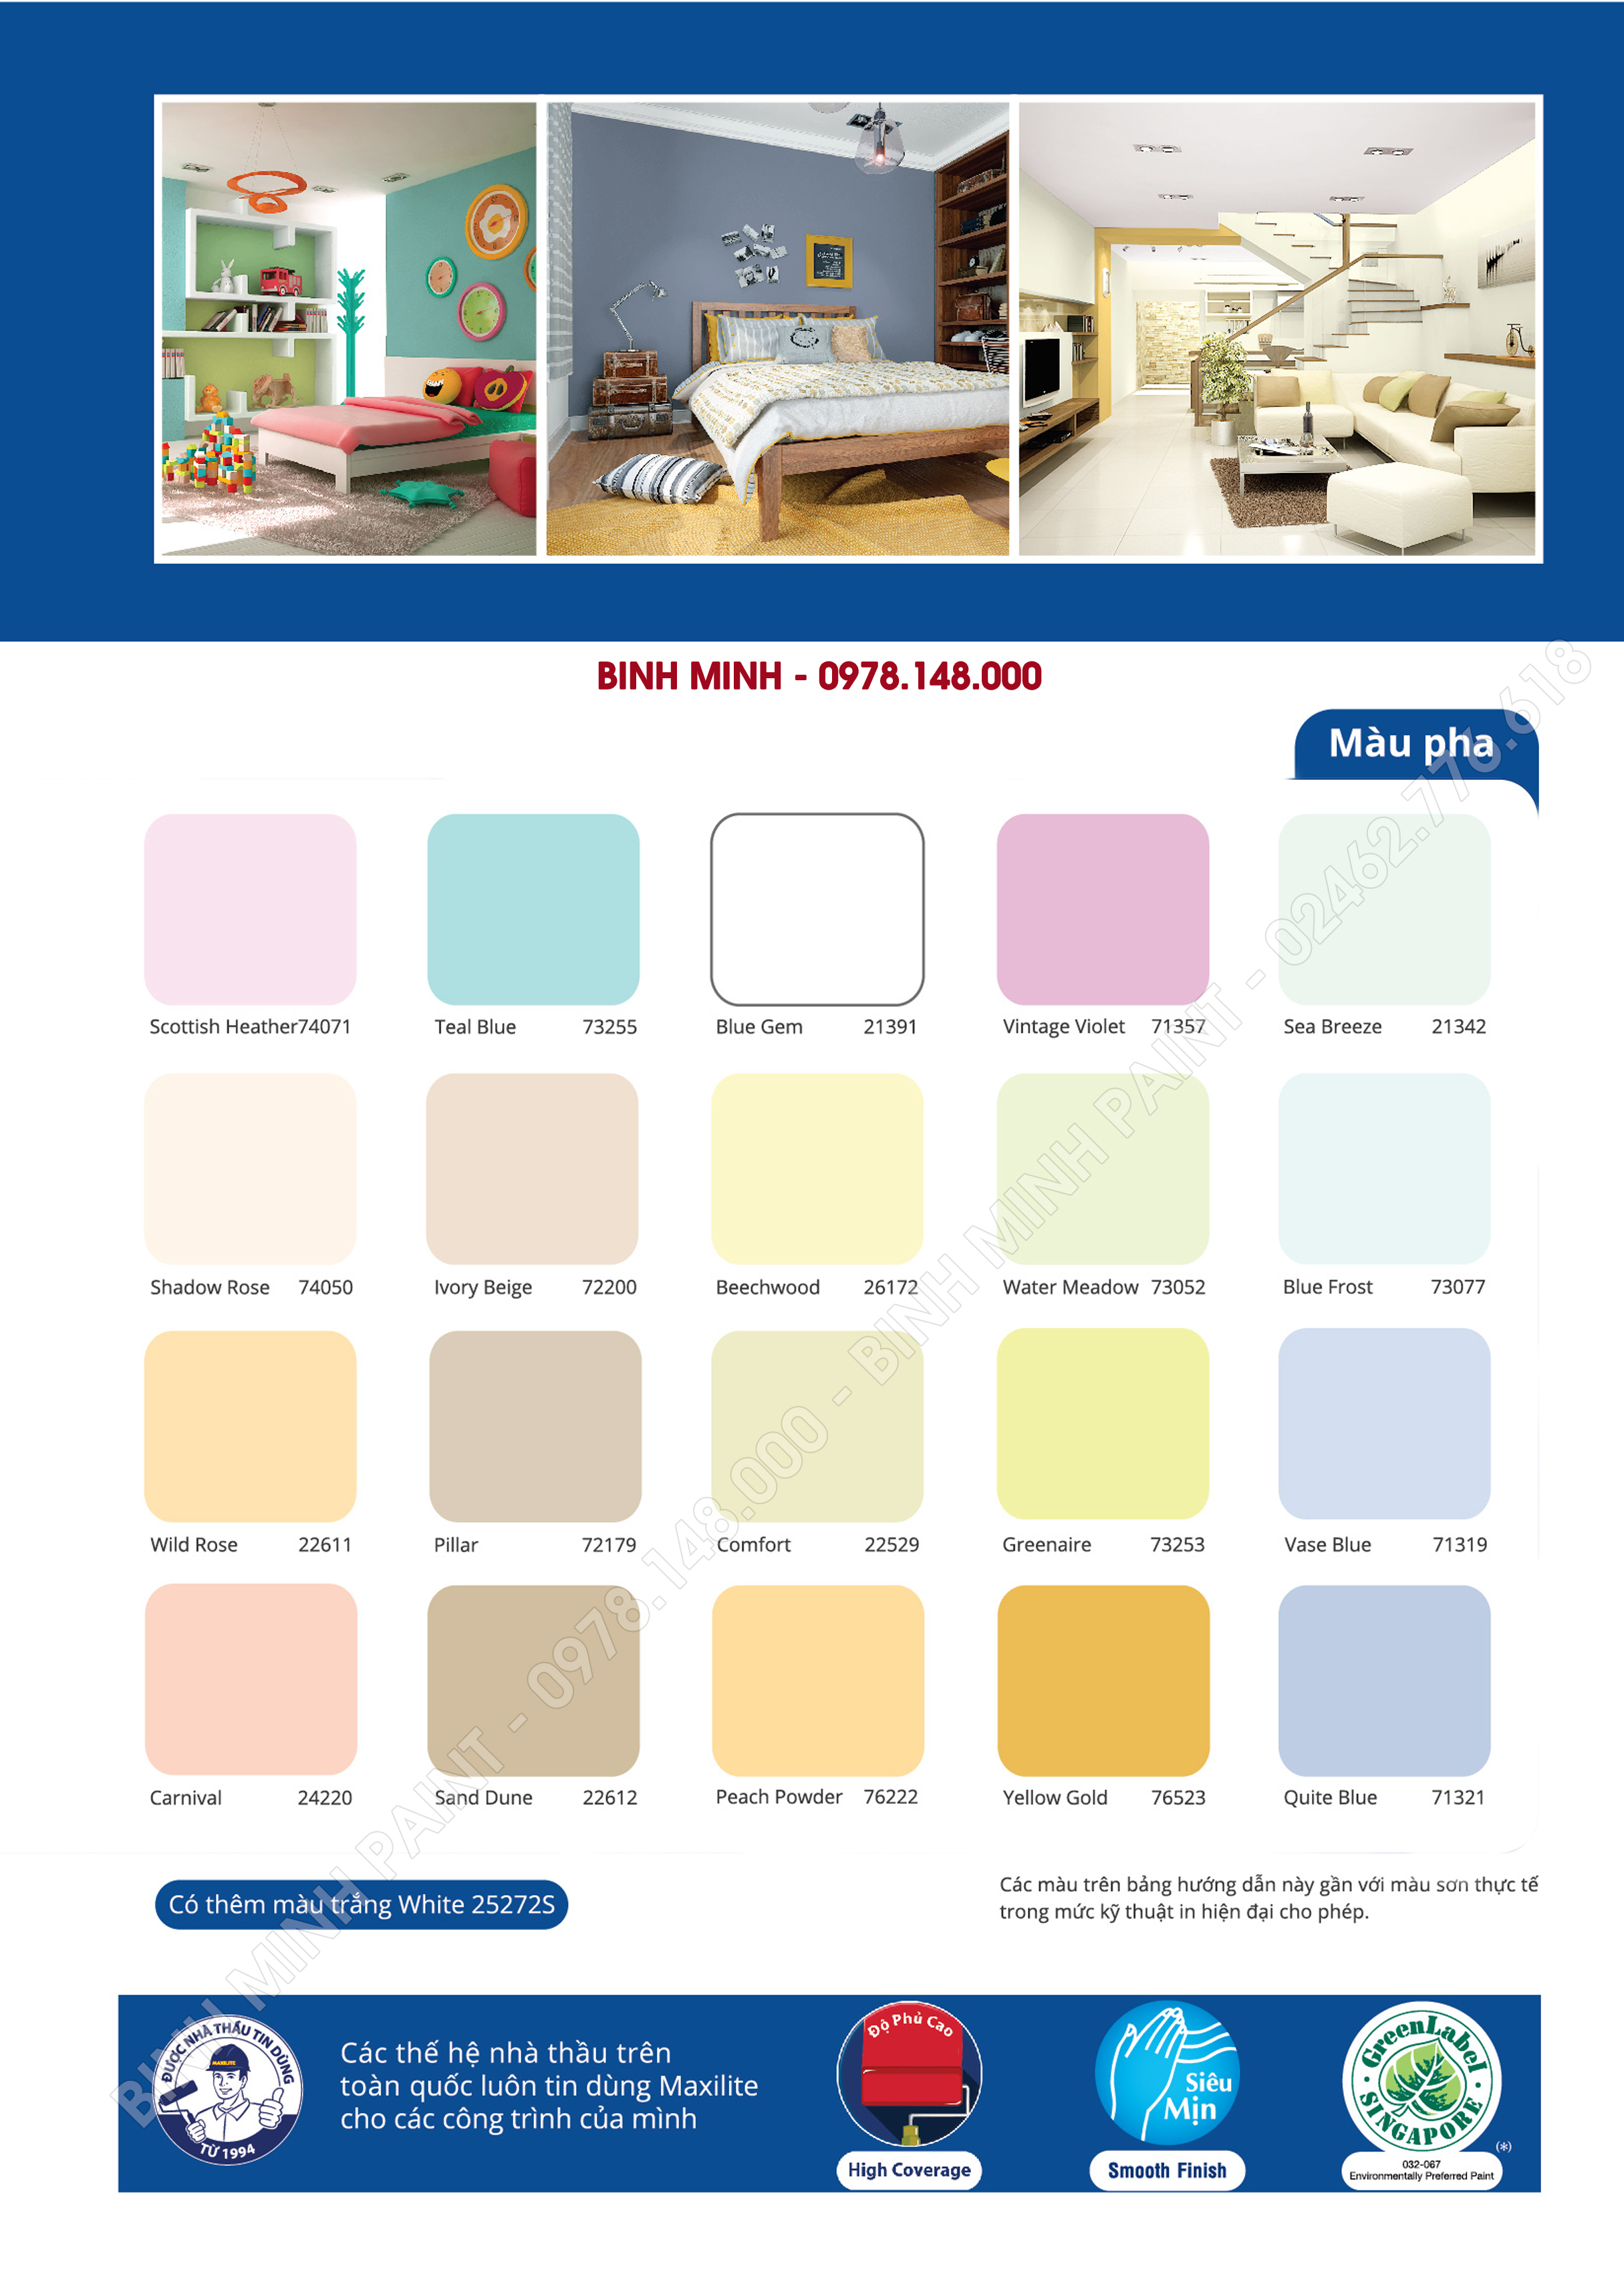 Với bảng màu sơn Maxilite trong nhà Bình Minh, bạn sẽ sớm trở thành nhà thiết kế nội thất giỏi trong mắt gia đình và bạn bè. Sản phẩm này mang đến cho bạn sự lựa chọn màu sắc đa dạng, bền màu, dễ sử dụng và tùy chỉnh hoàn toàn theo sở thích của bạn.